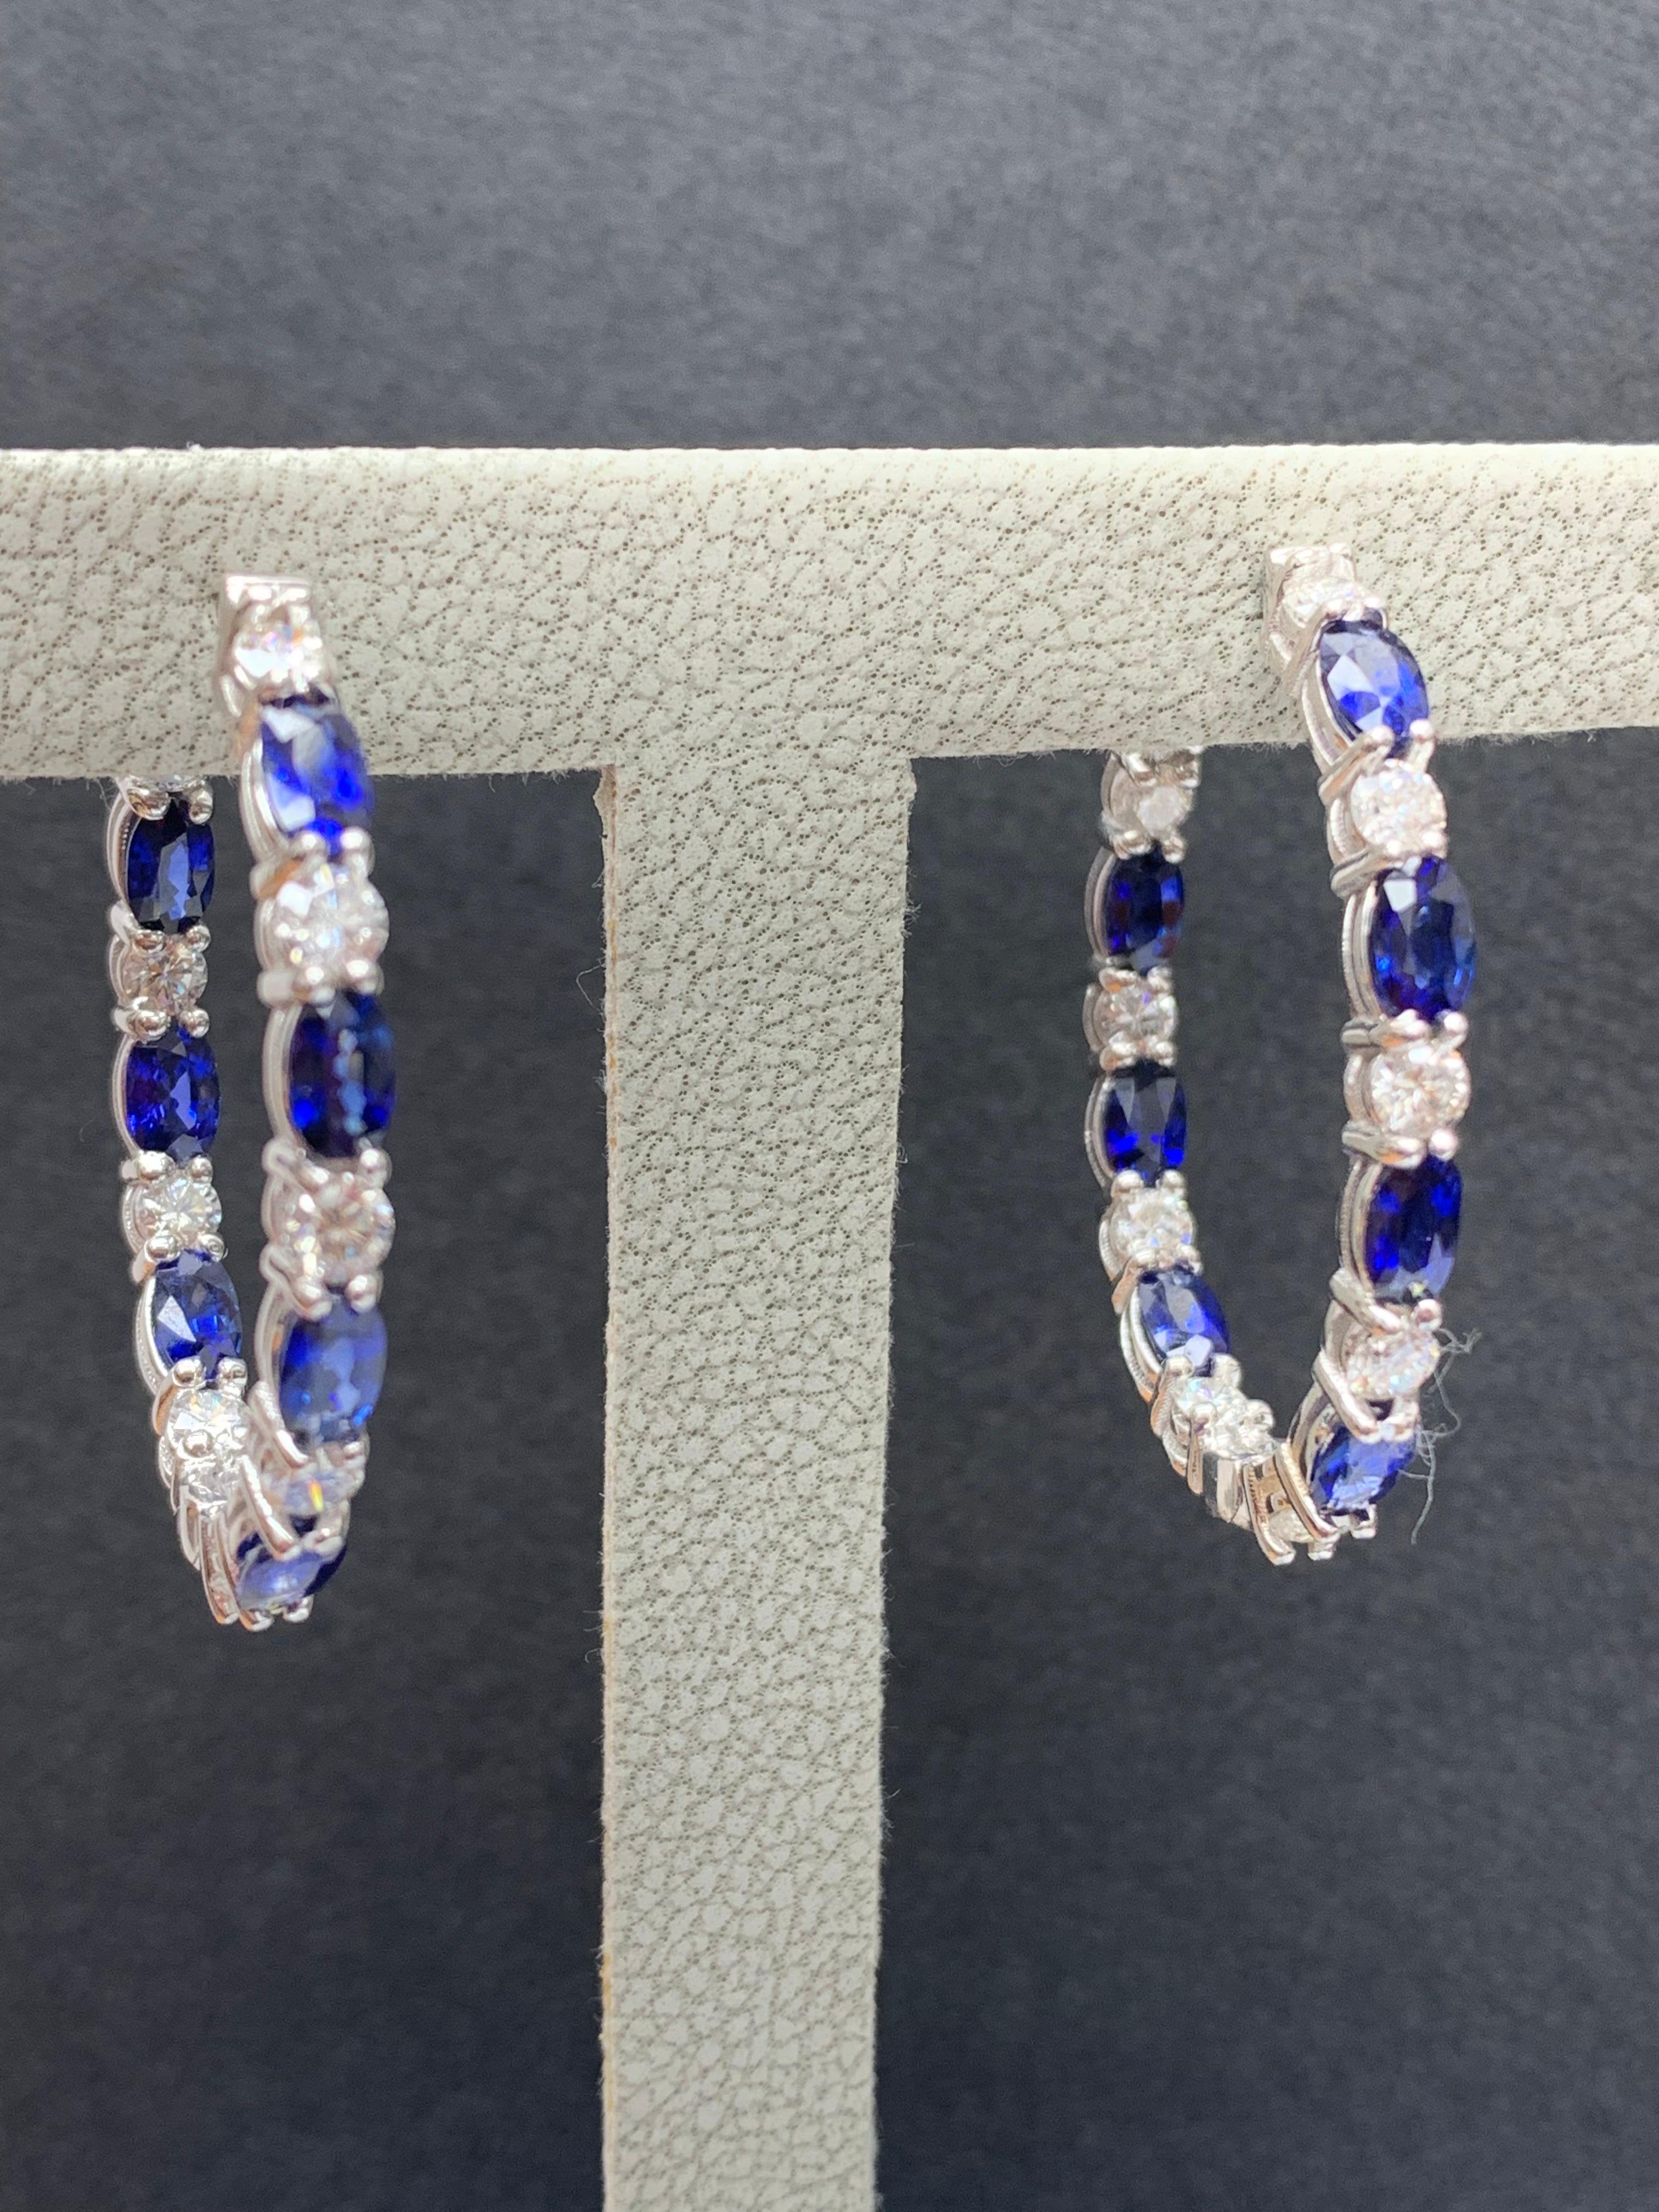 4.13 Carat Oval Cut Blue Sapphire Diamond Hoop Earrings in 14K White Gold For Sale 2